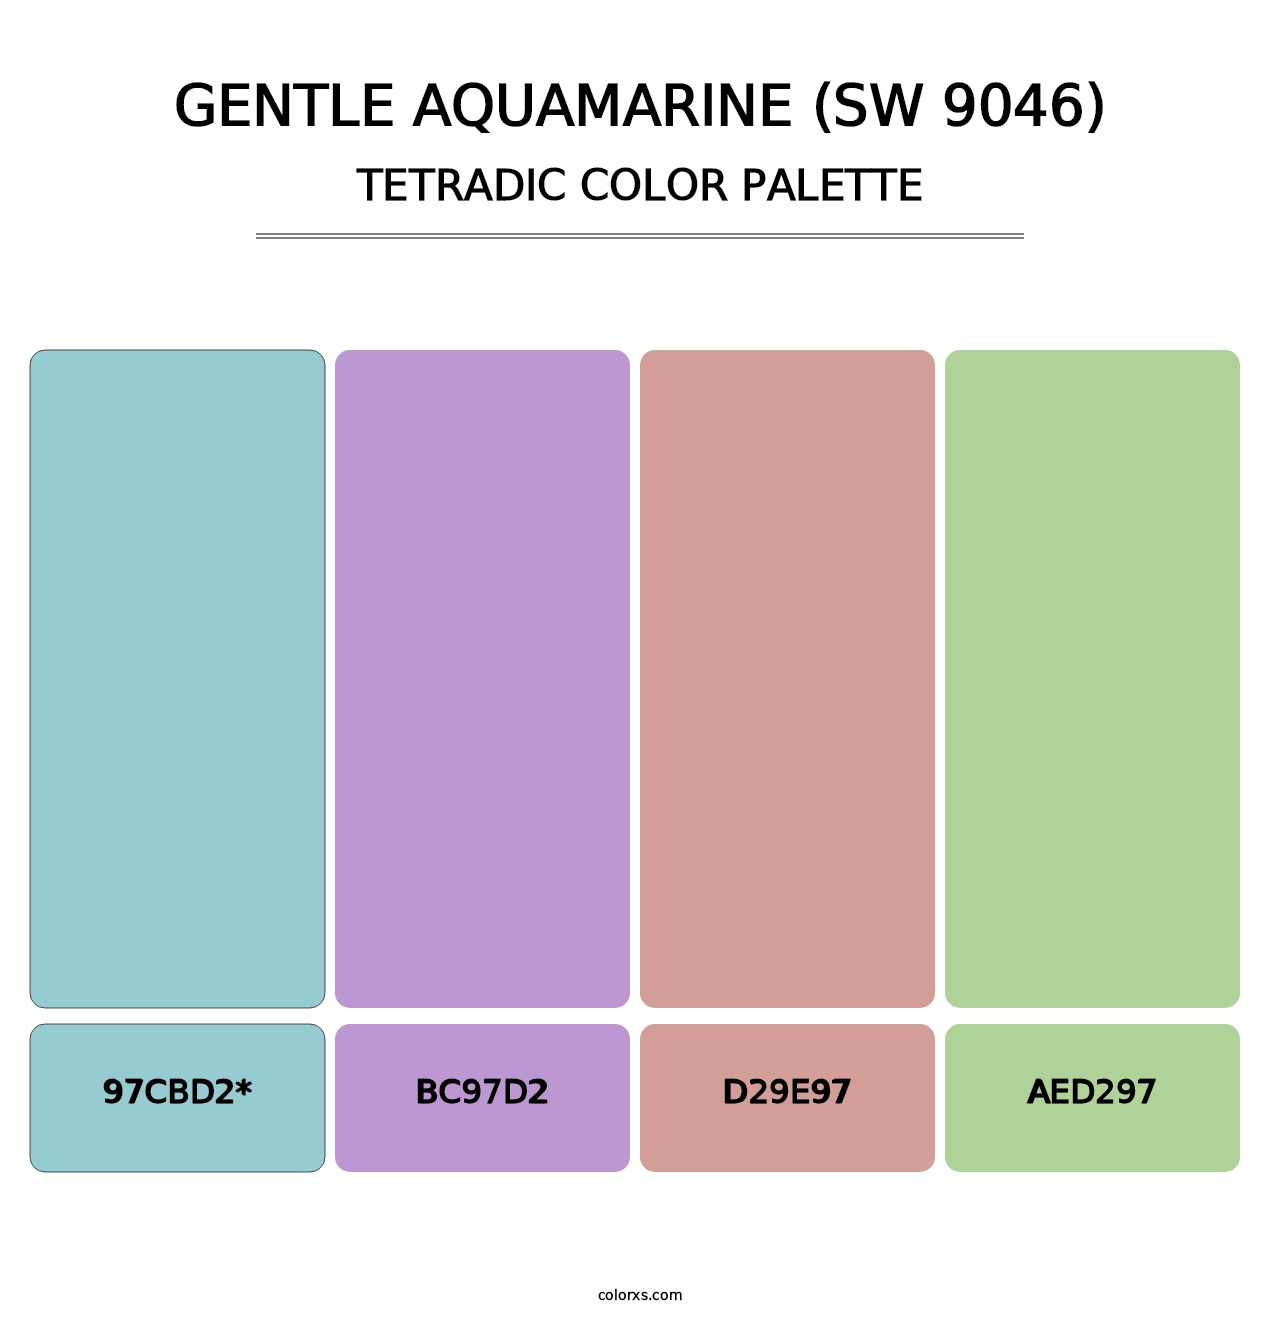 Gentle Aquamarine (SW 9046) - Tetradic Color Palette